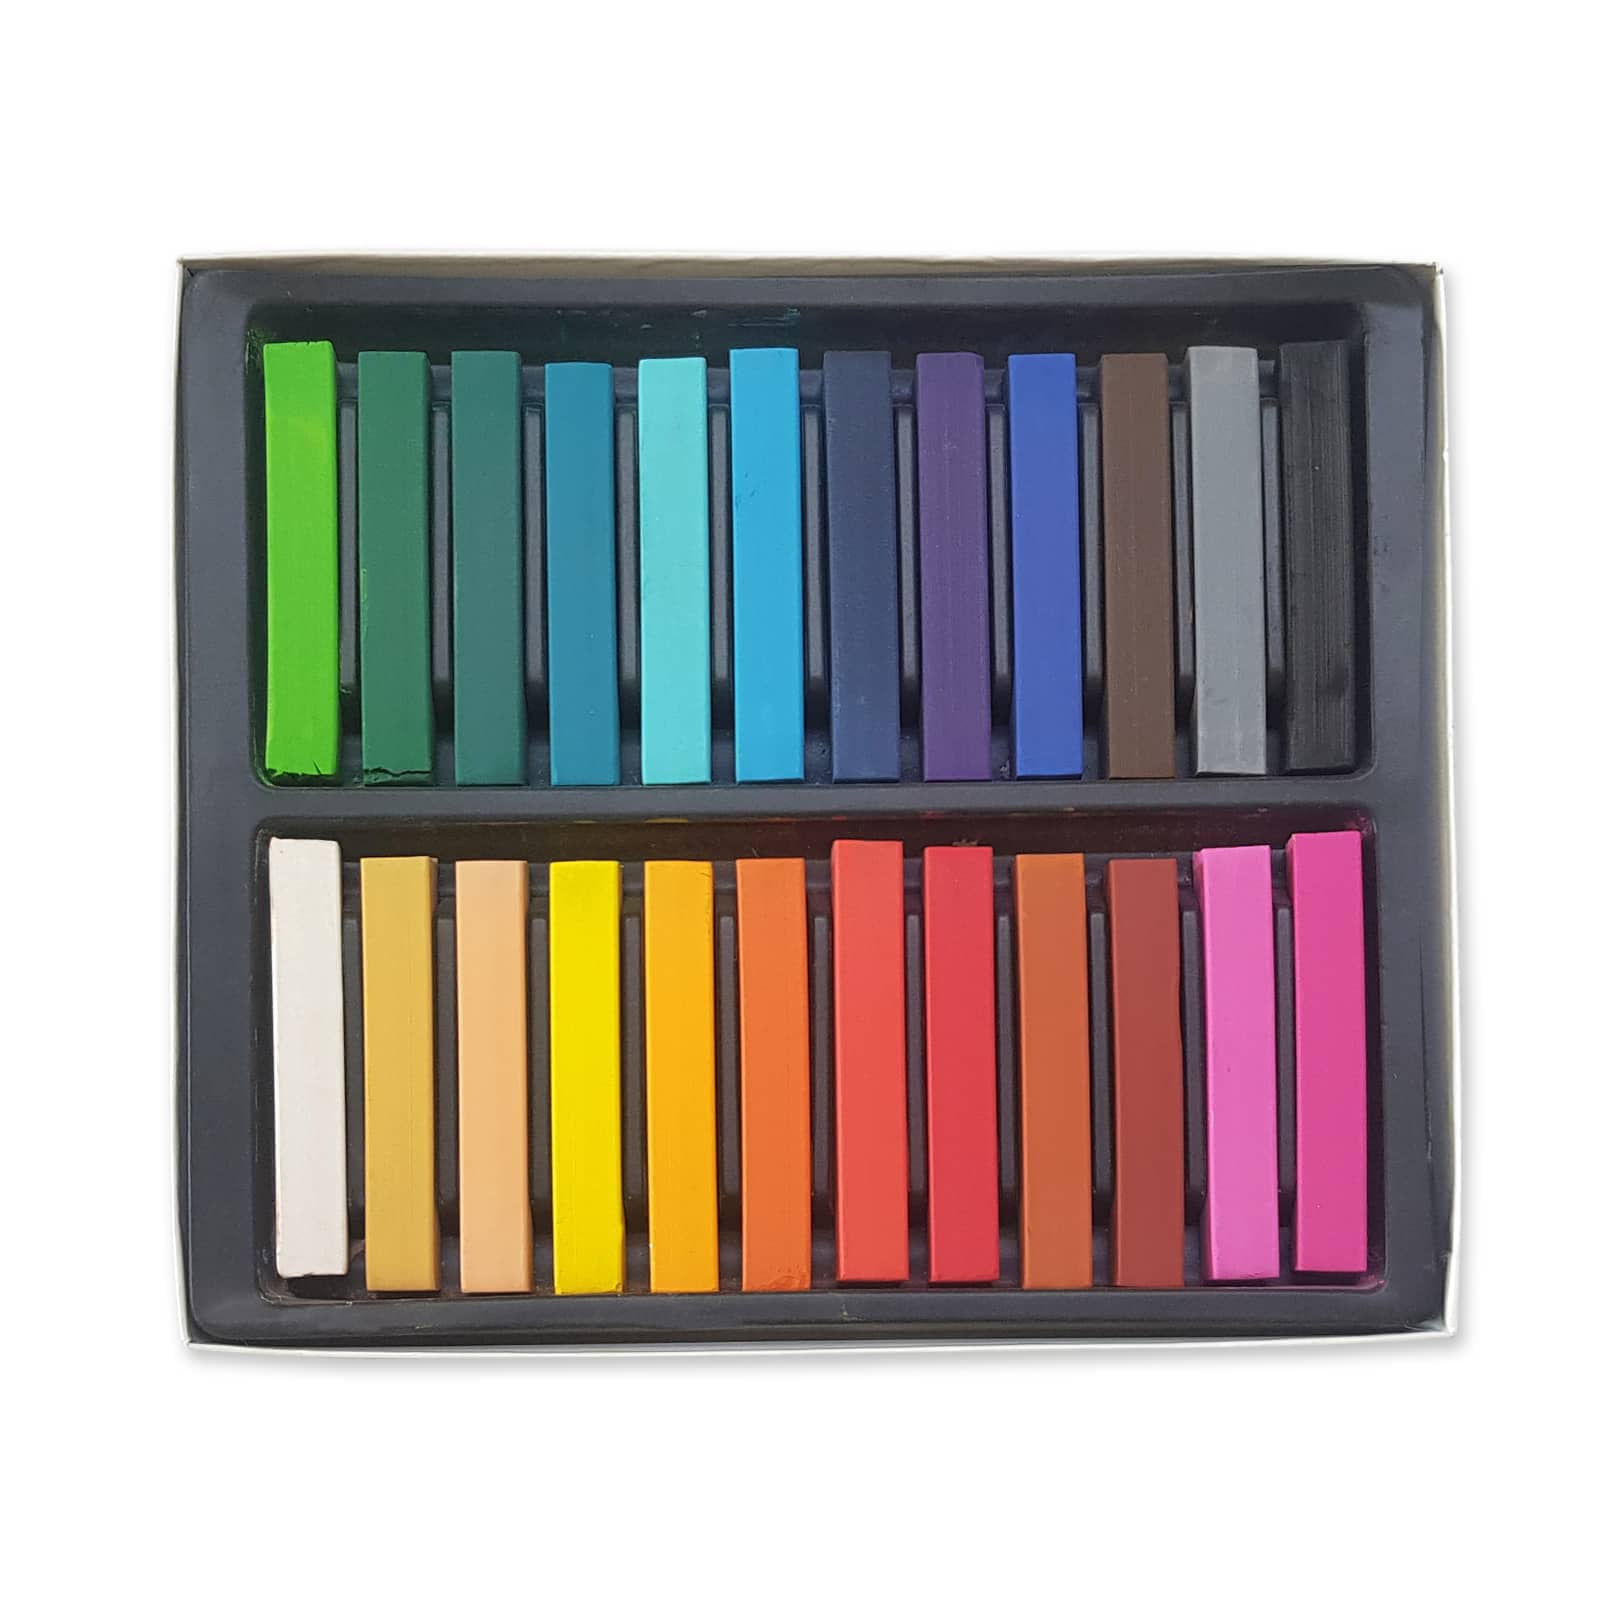 Artist's Loft Soft Chalk Pastels 36 Assorted Colors